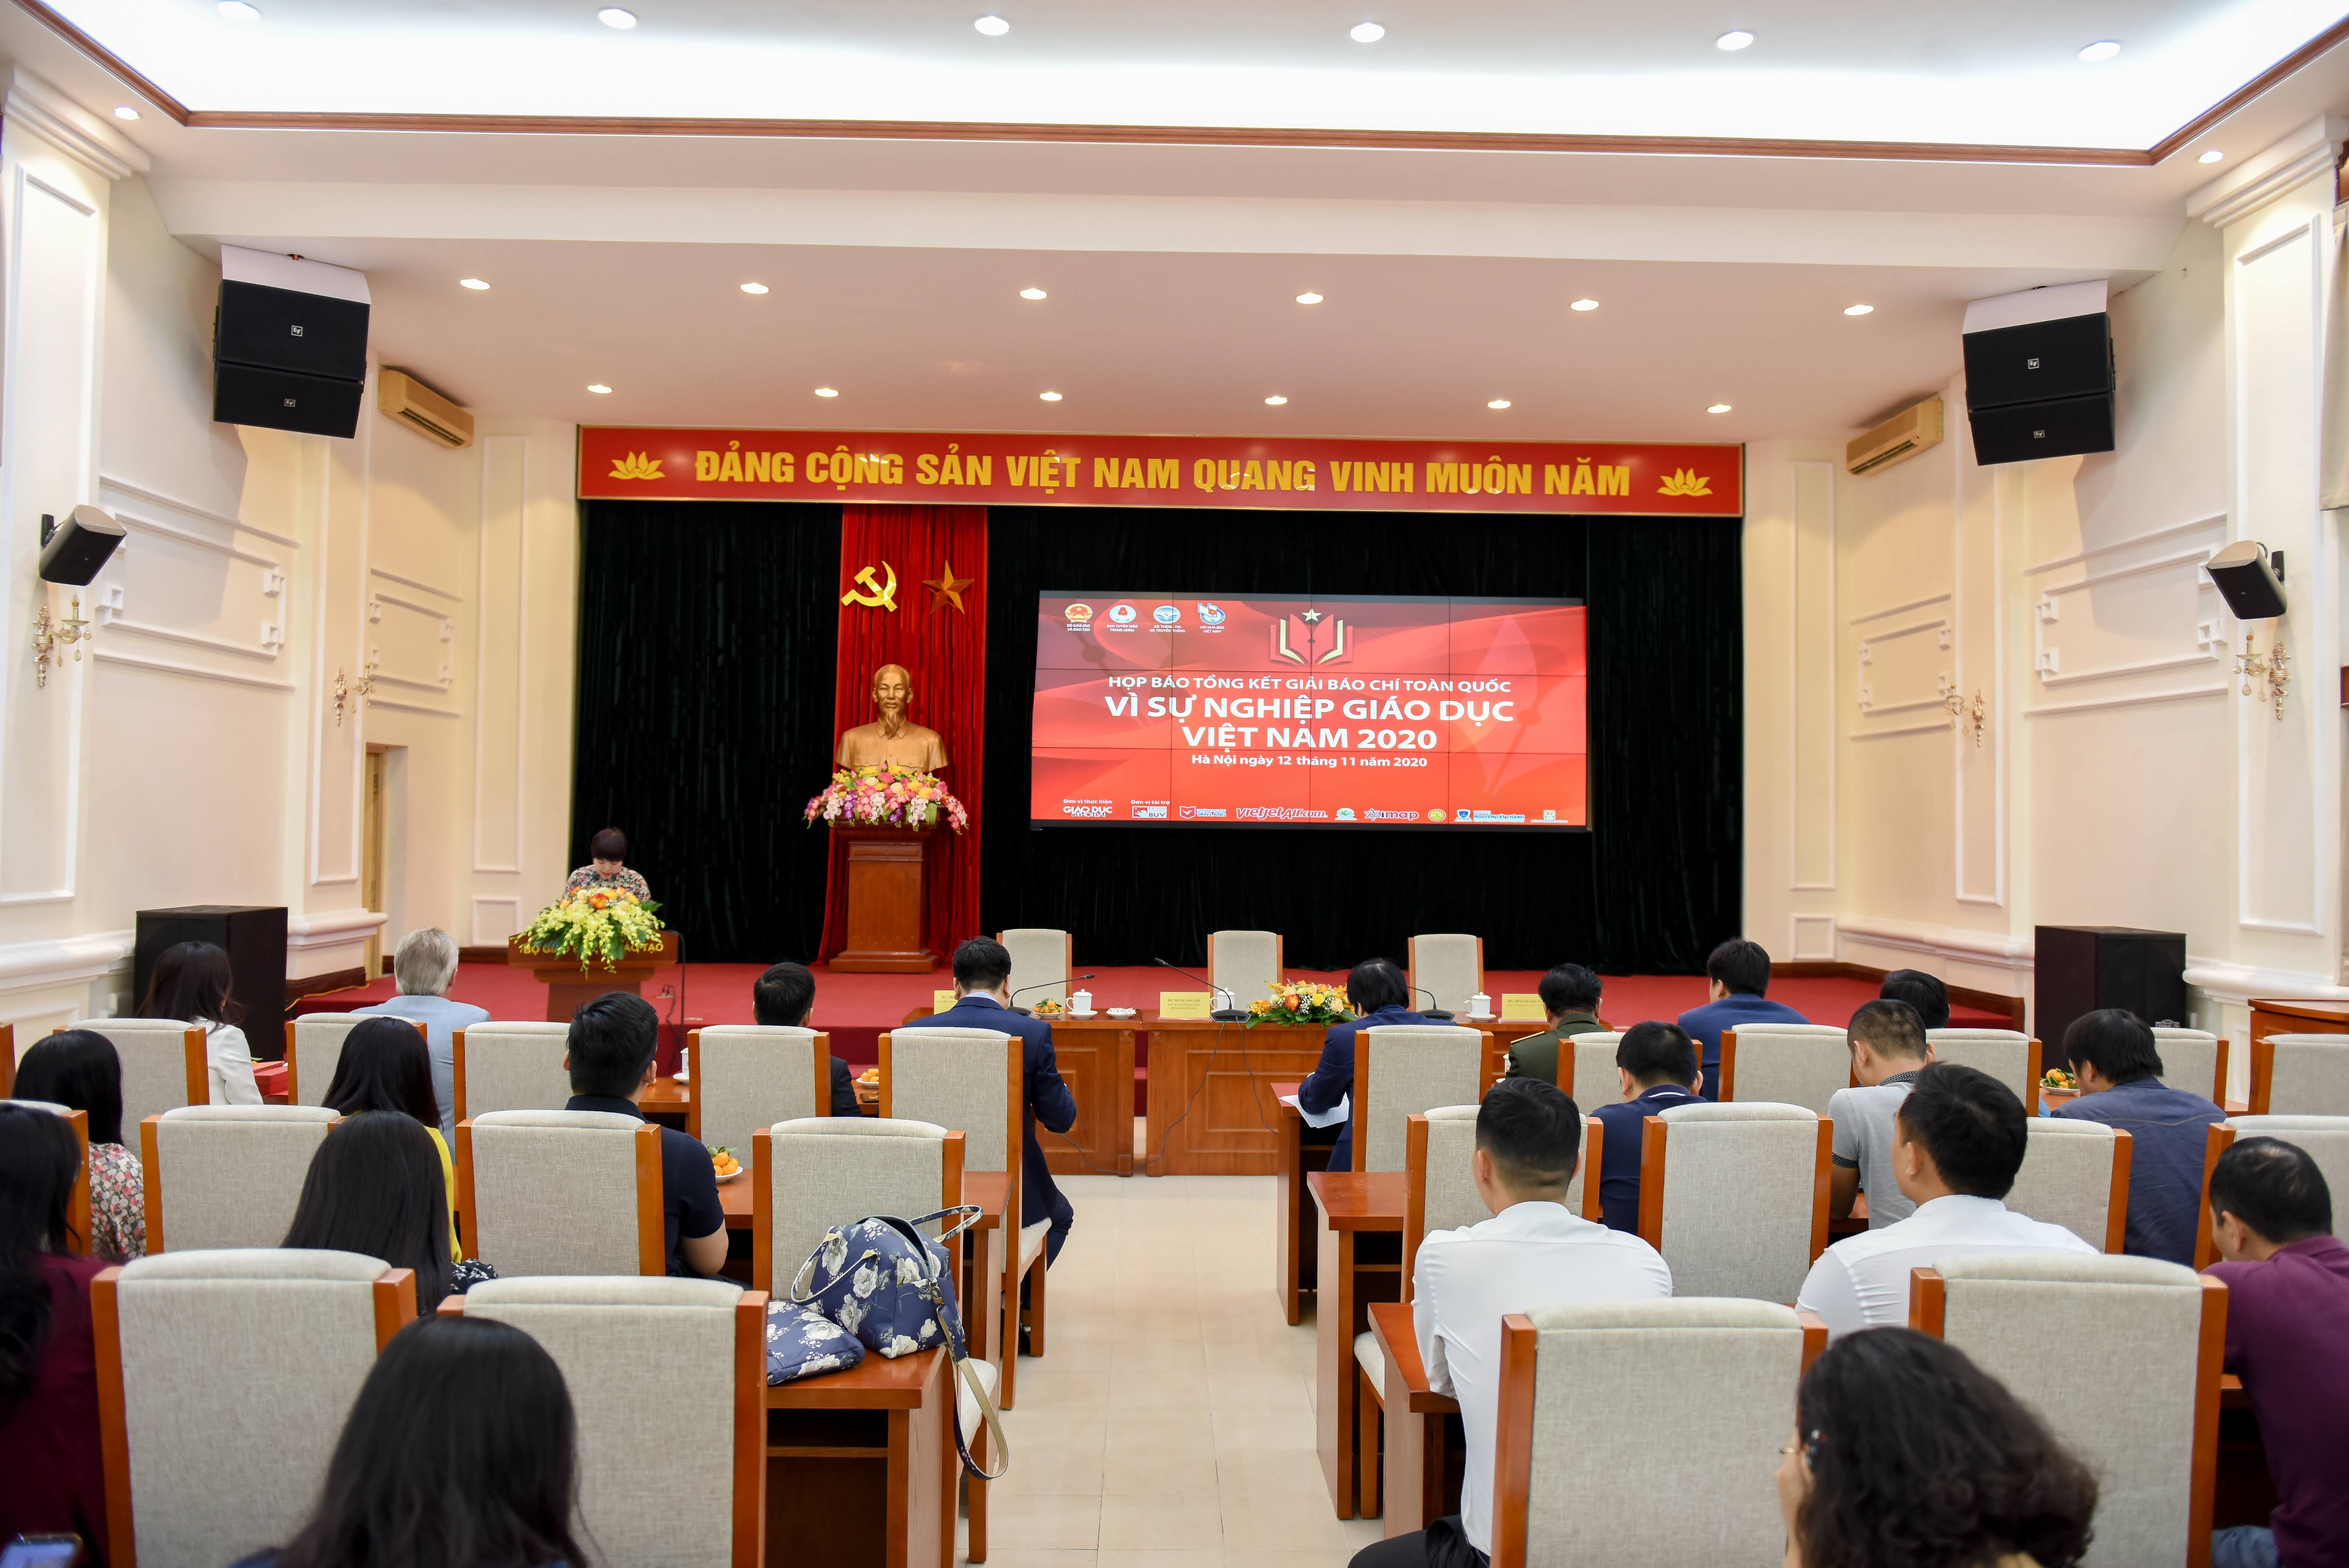 Họp báo tổng kết Giải báo chí toàn quốc “Vì sự nghiệp giáo dục Việt Nam” năm 2020 Ảnh: VGP/Nhật Nam